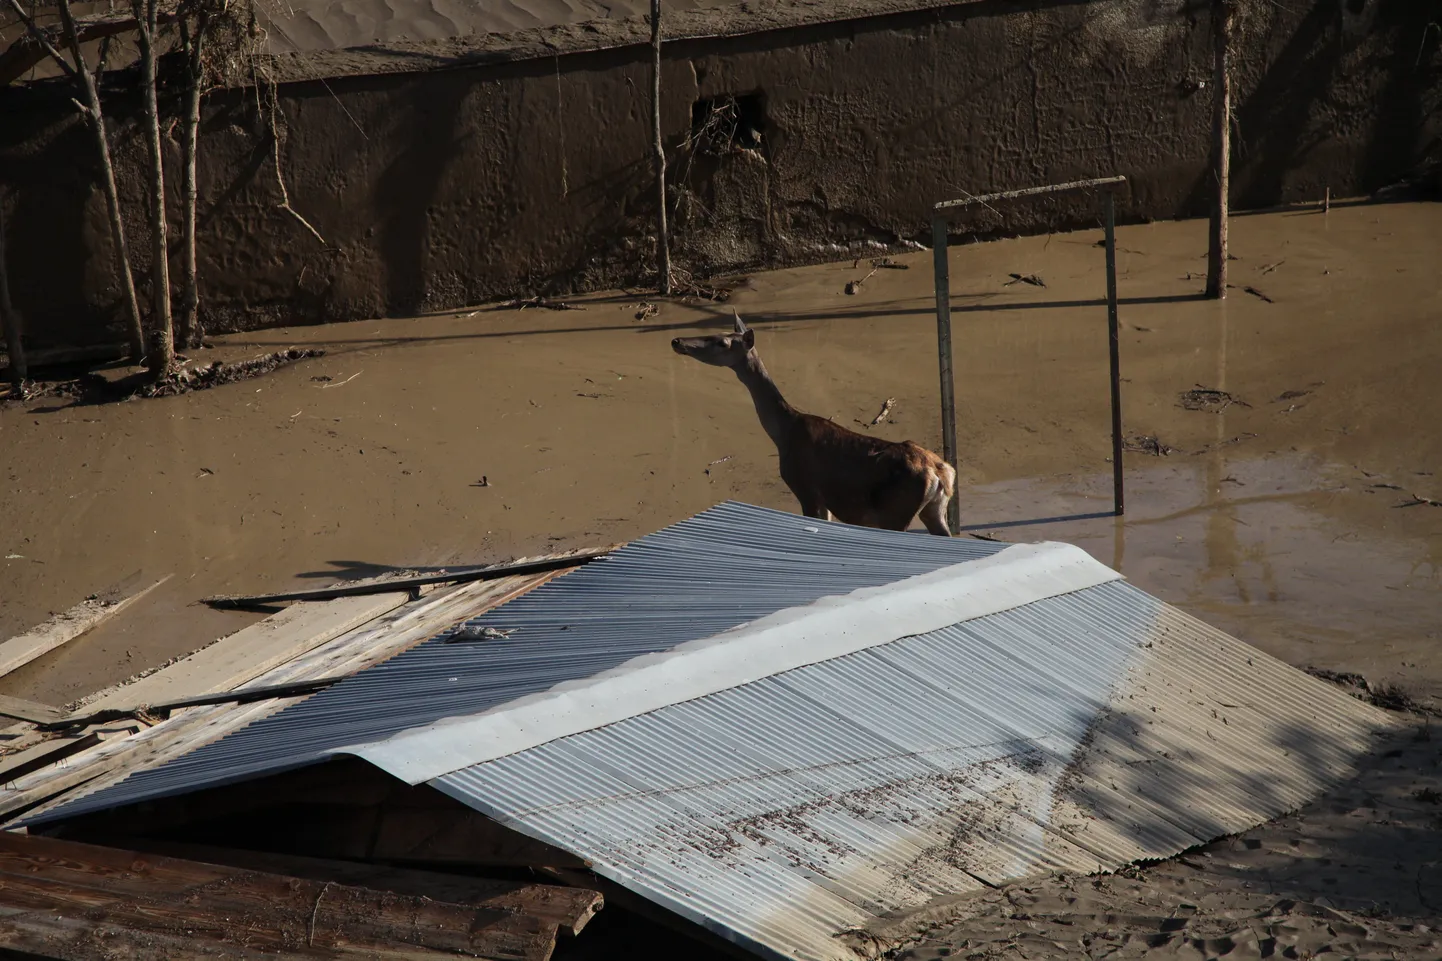 Üleujutatud loomaaiast pagenud loom eile Thbilisis.